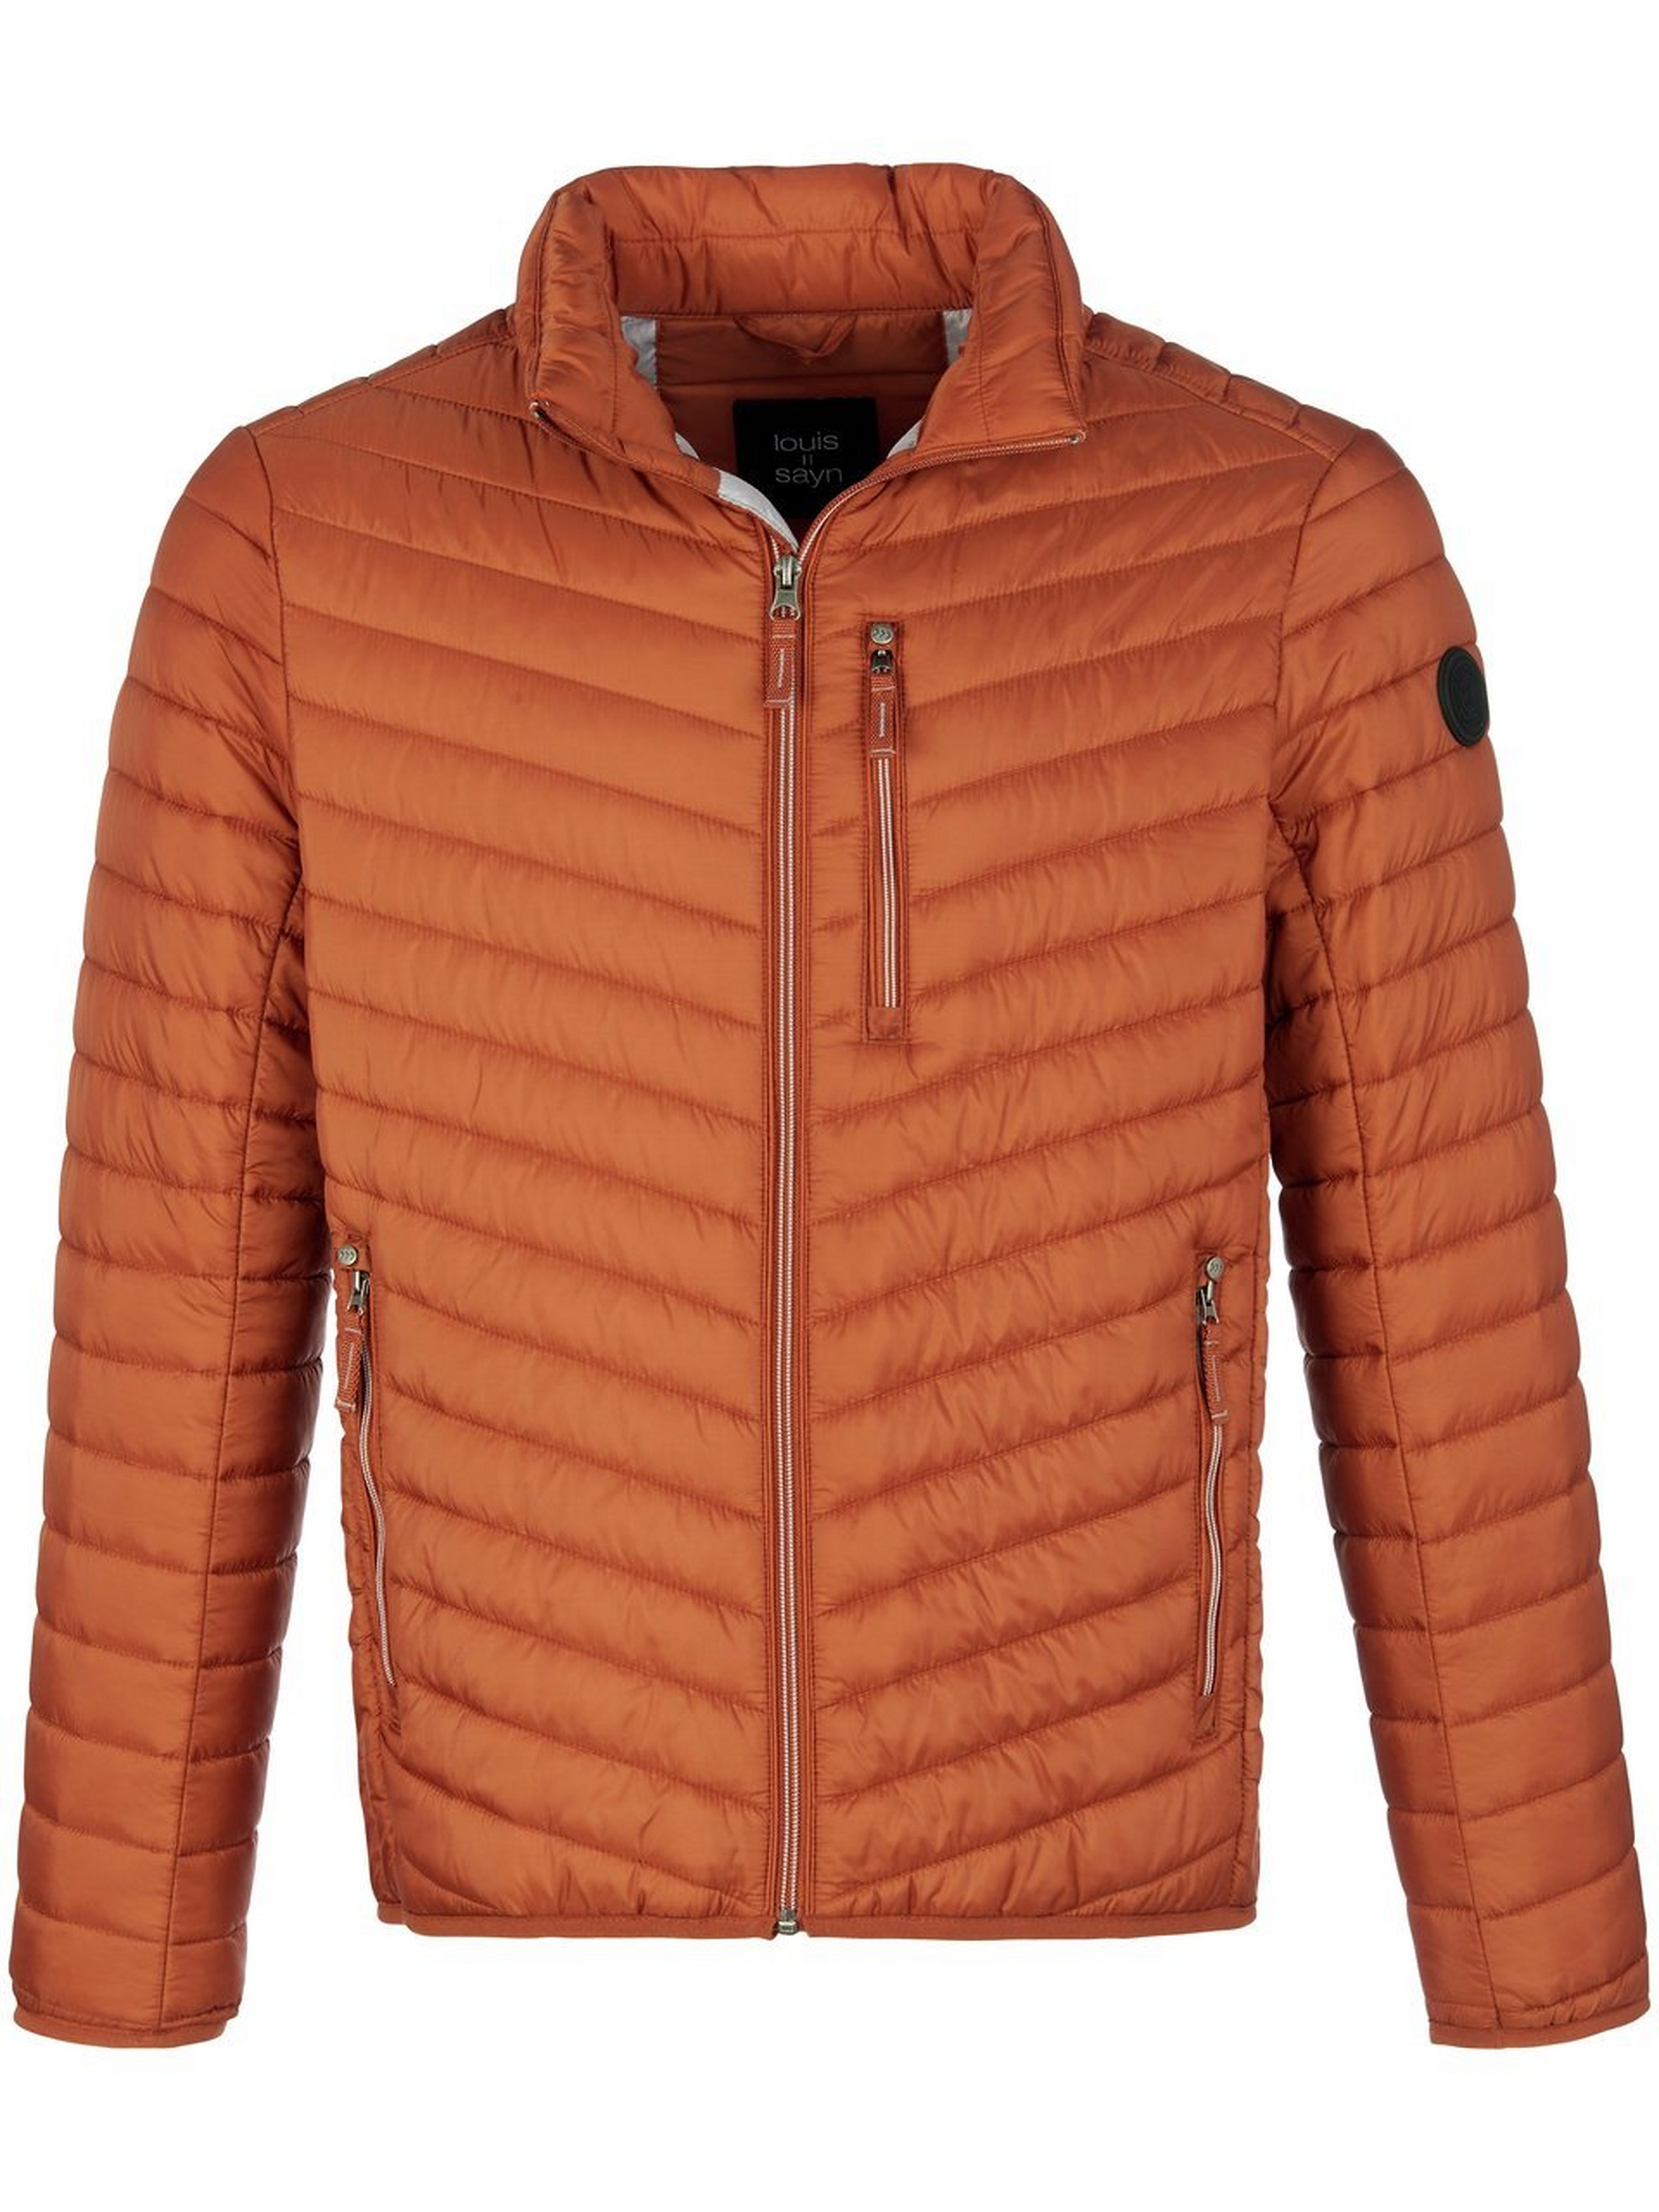 Windwerende en waterafstotende gewatteerde jas Van Louis Sayn oranje